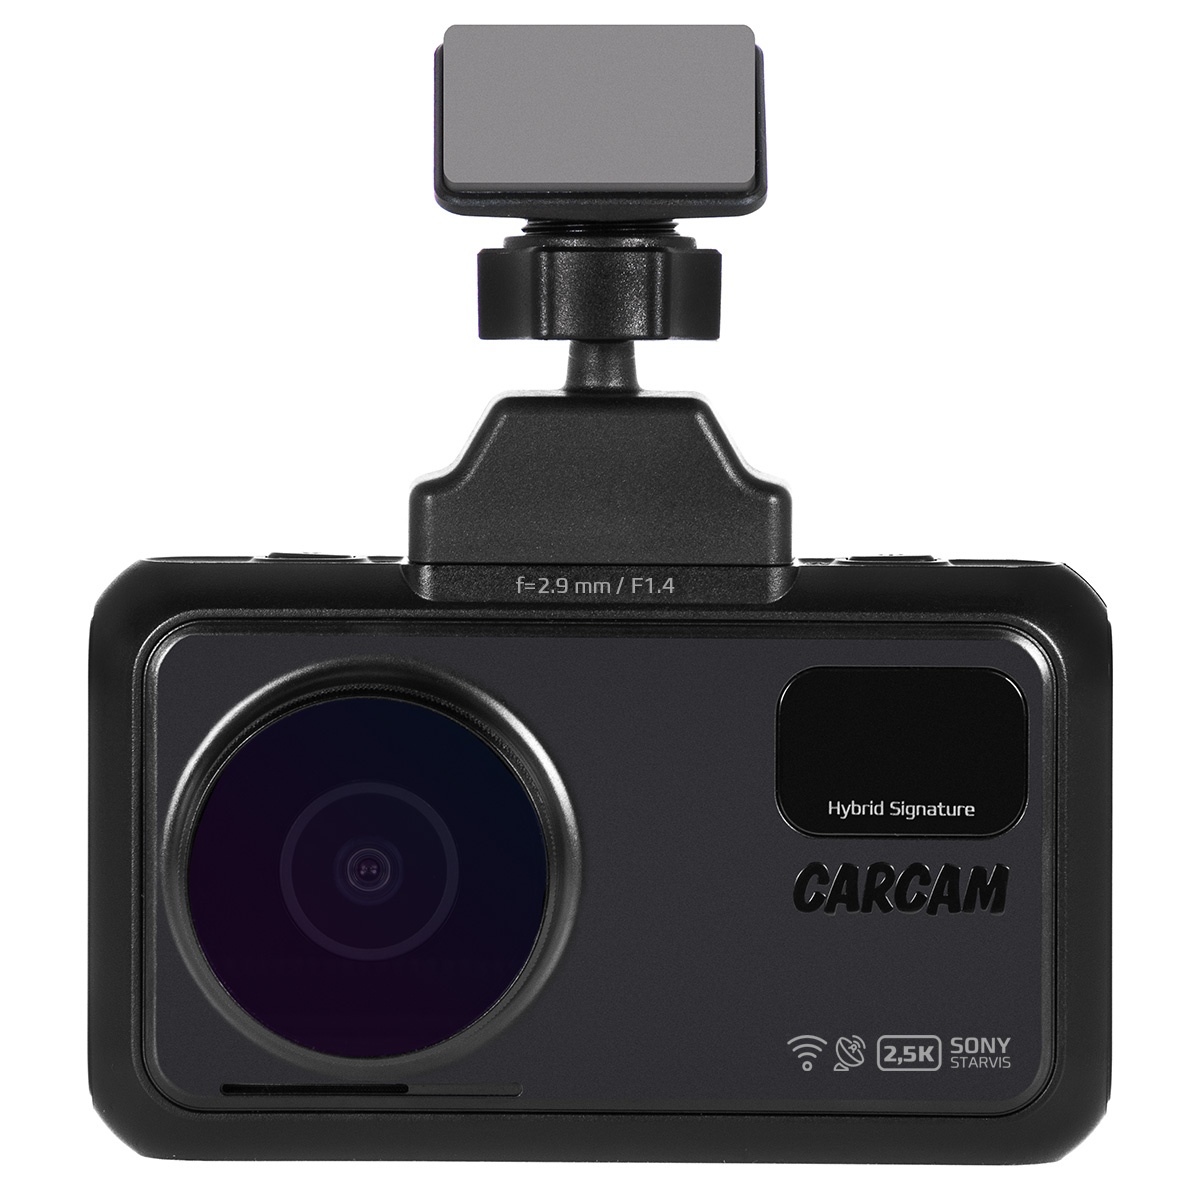 Hybrid 4 signature. Carcam Hybrid 2 Signature. Carcam Hybrid 3s Signature. Видеорегистратор carcam Hybrid. Carcam Hybrid 2 Signature - видеорегистратор с радар-детектором.